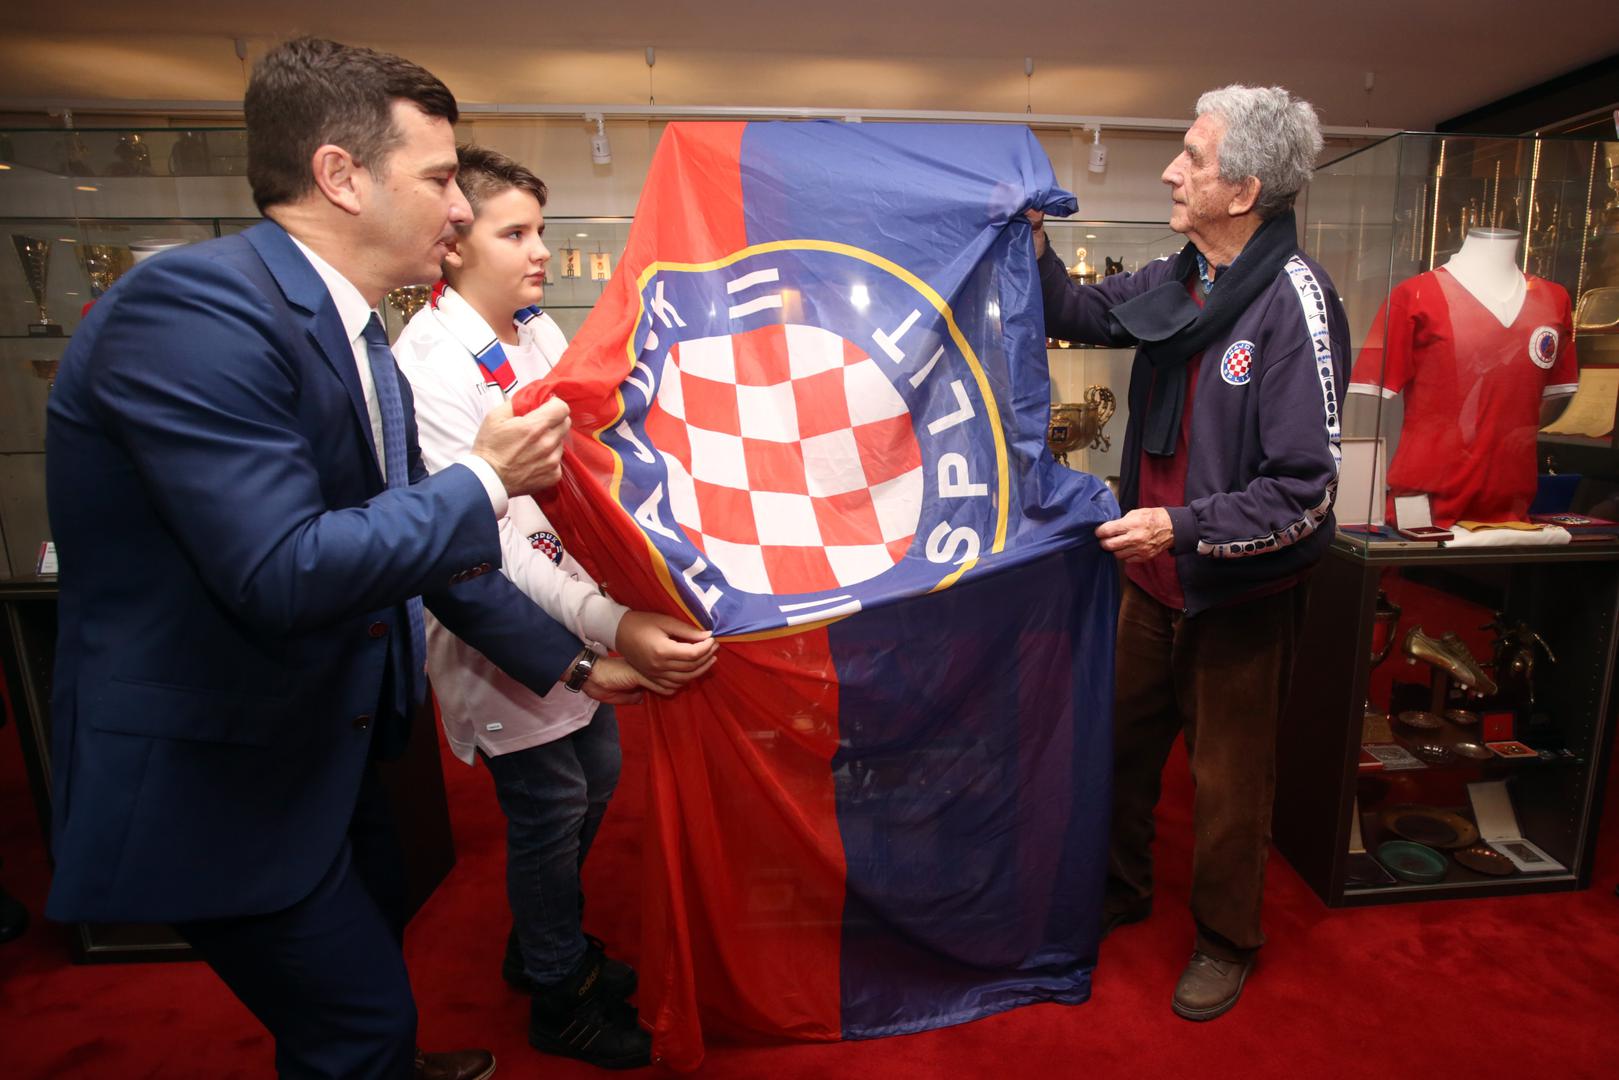 Na početku se nazočnima obratio predsjednik Uprave Hajduka, Jasmin Huljaj, koji je istaknuo veličinu Frane Matošića u povijesti Hajduka te zahvalio obitelji posebno unuku Frani Spainu, što su odlučili da se Franini trofeji izlože u klupskoj trofejnoj Sali. 

